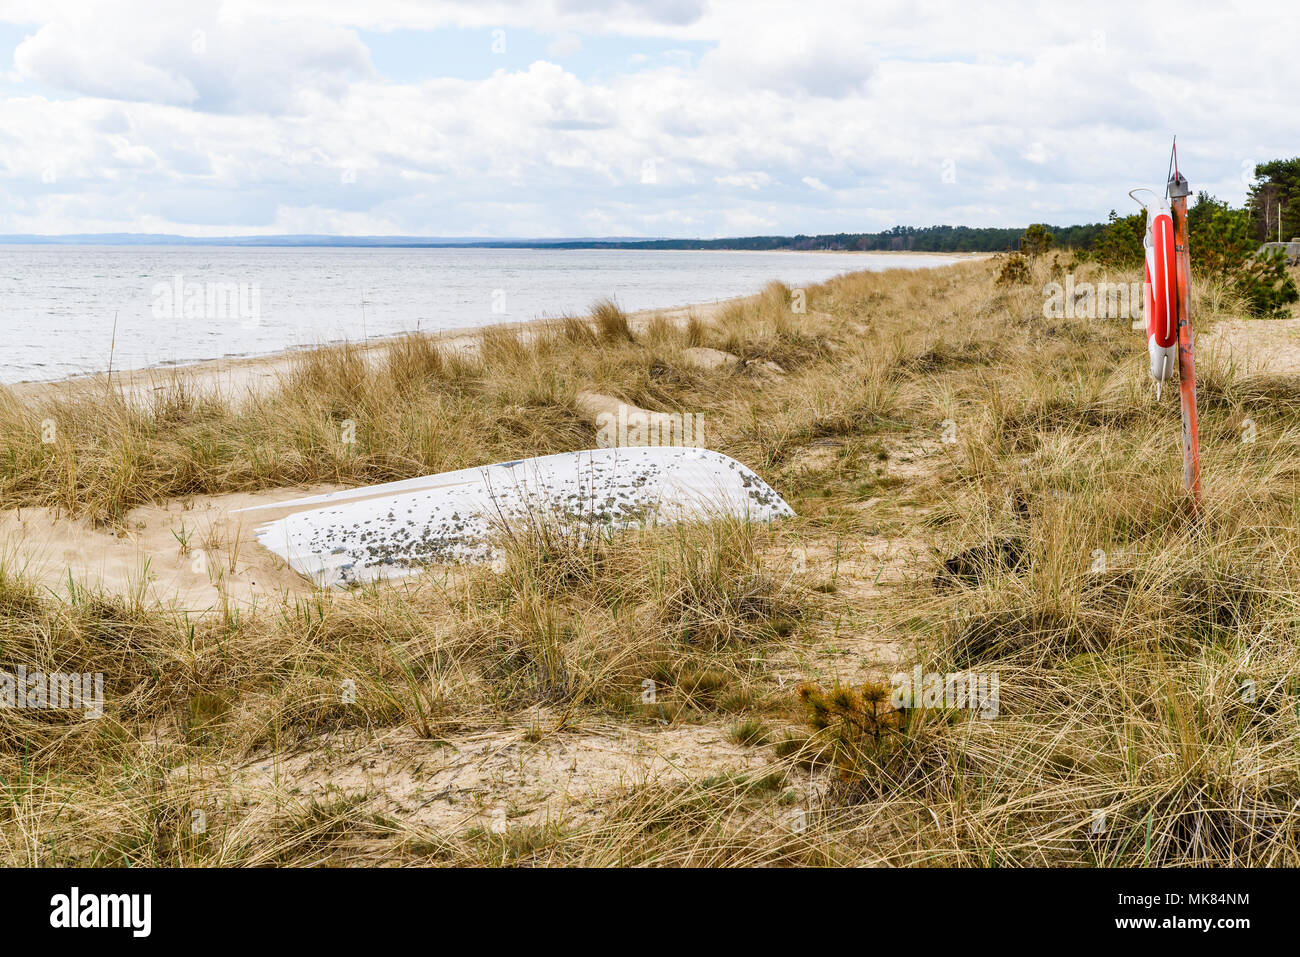 Ahus, Schweden. Rettungsring und Sand bedeckt Rettungsboot an einem Strand. Stockfoto